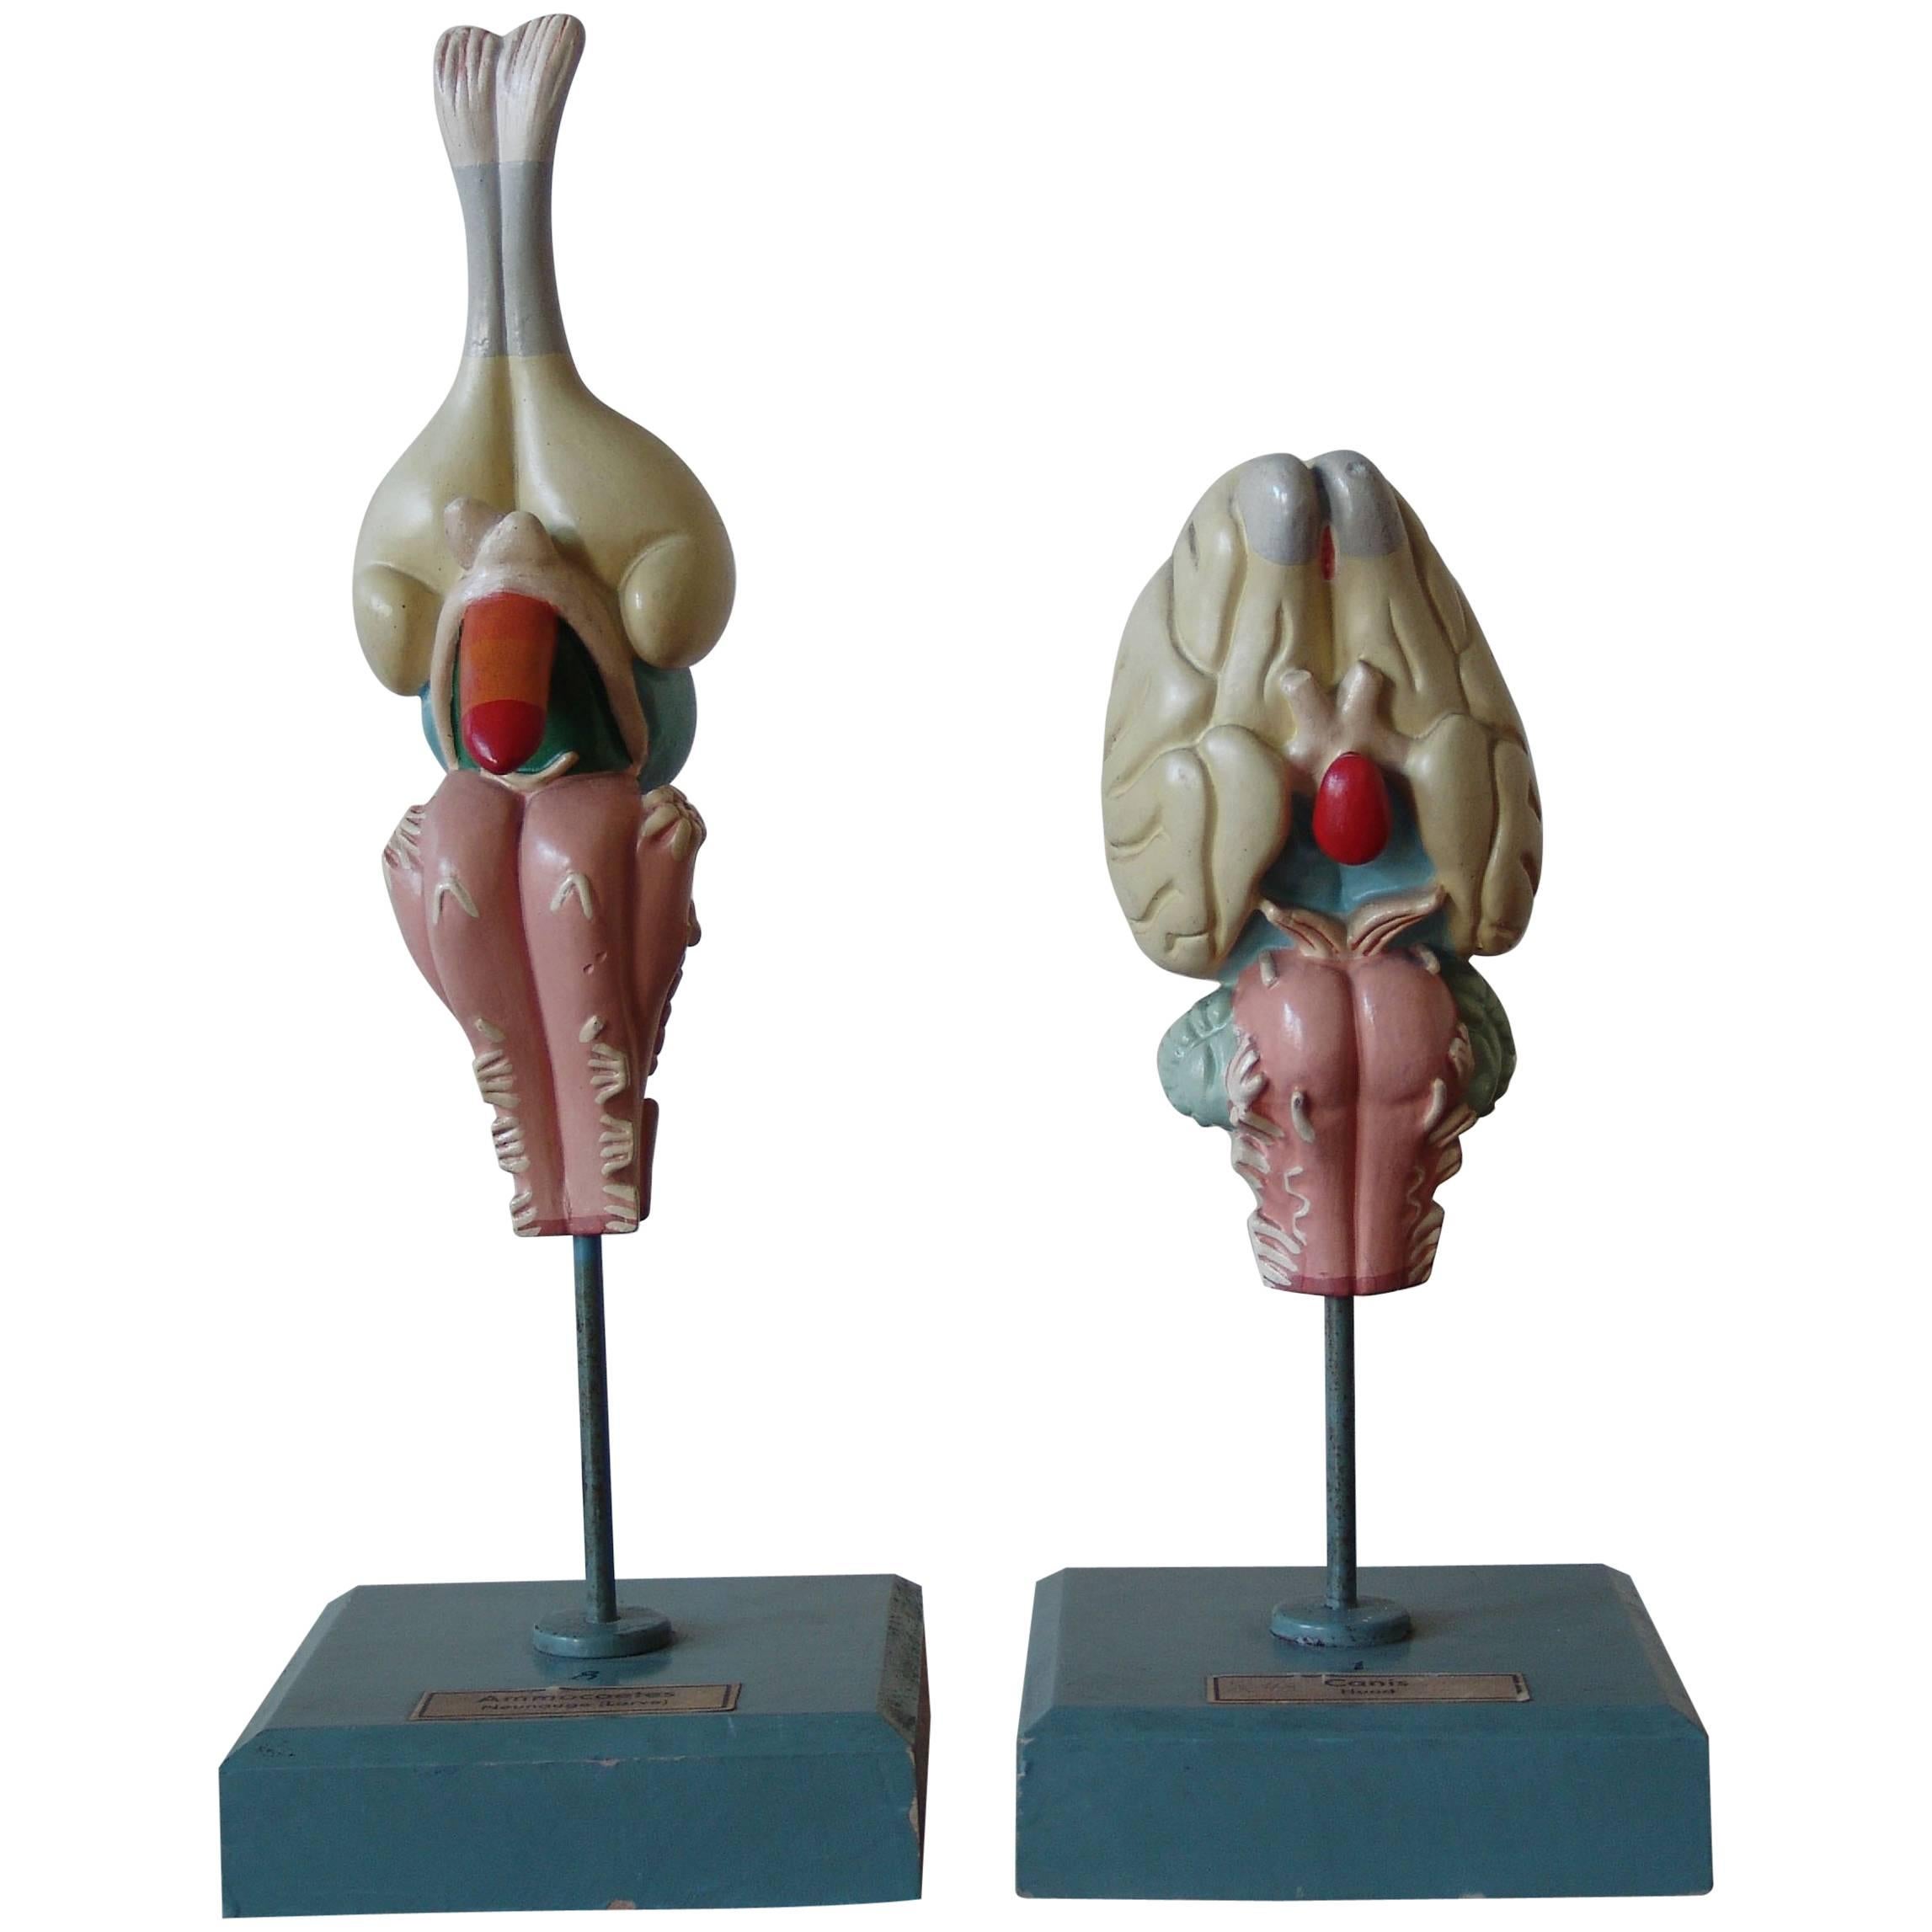 1950s Midcentury Design English Anatomical Models University